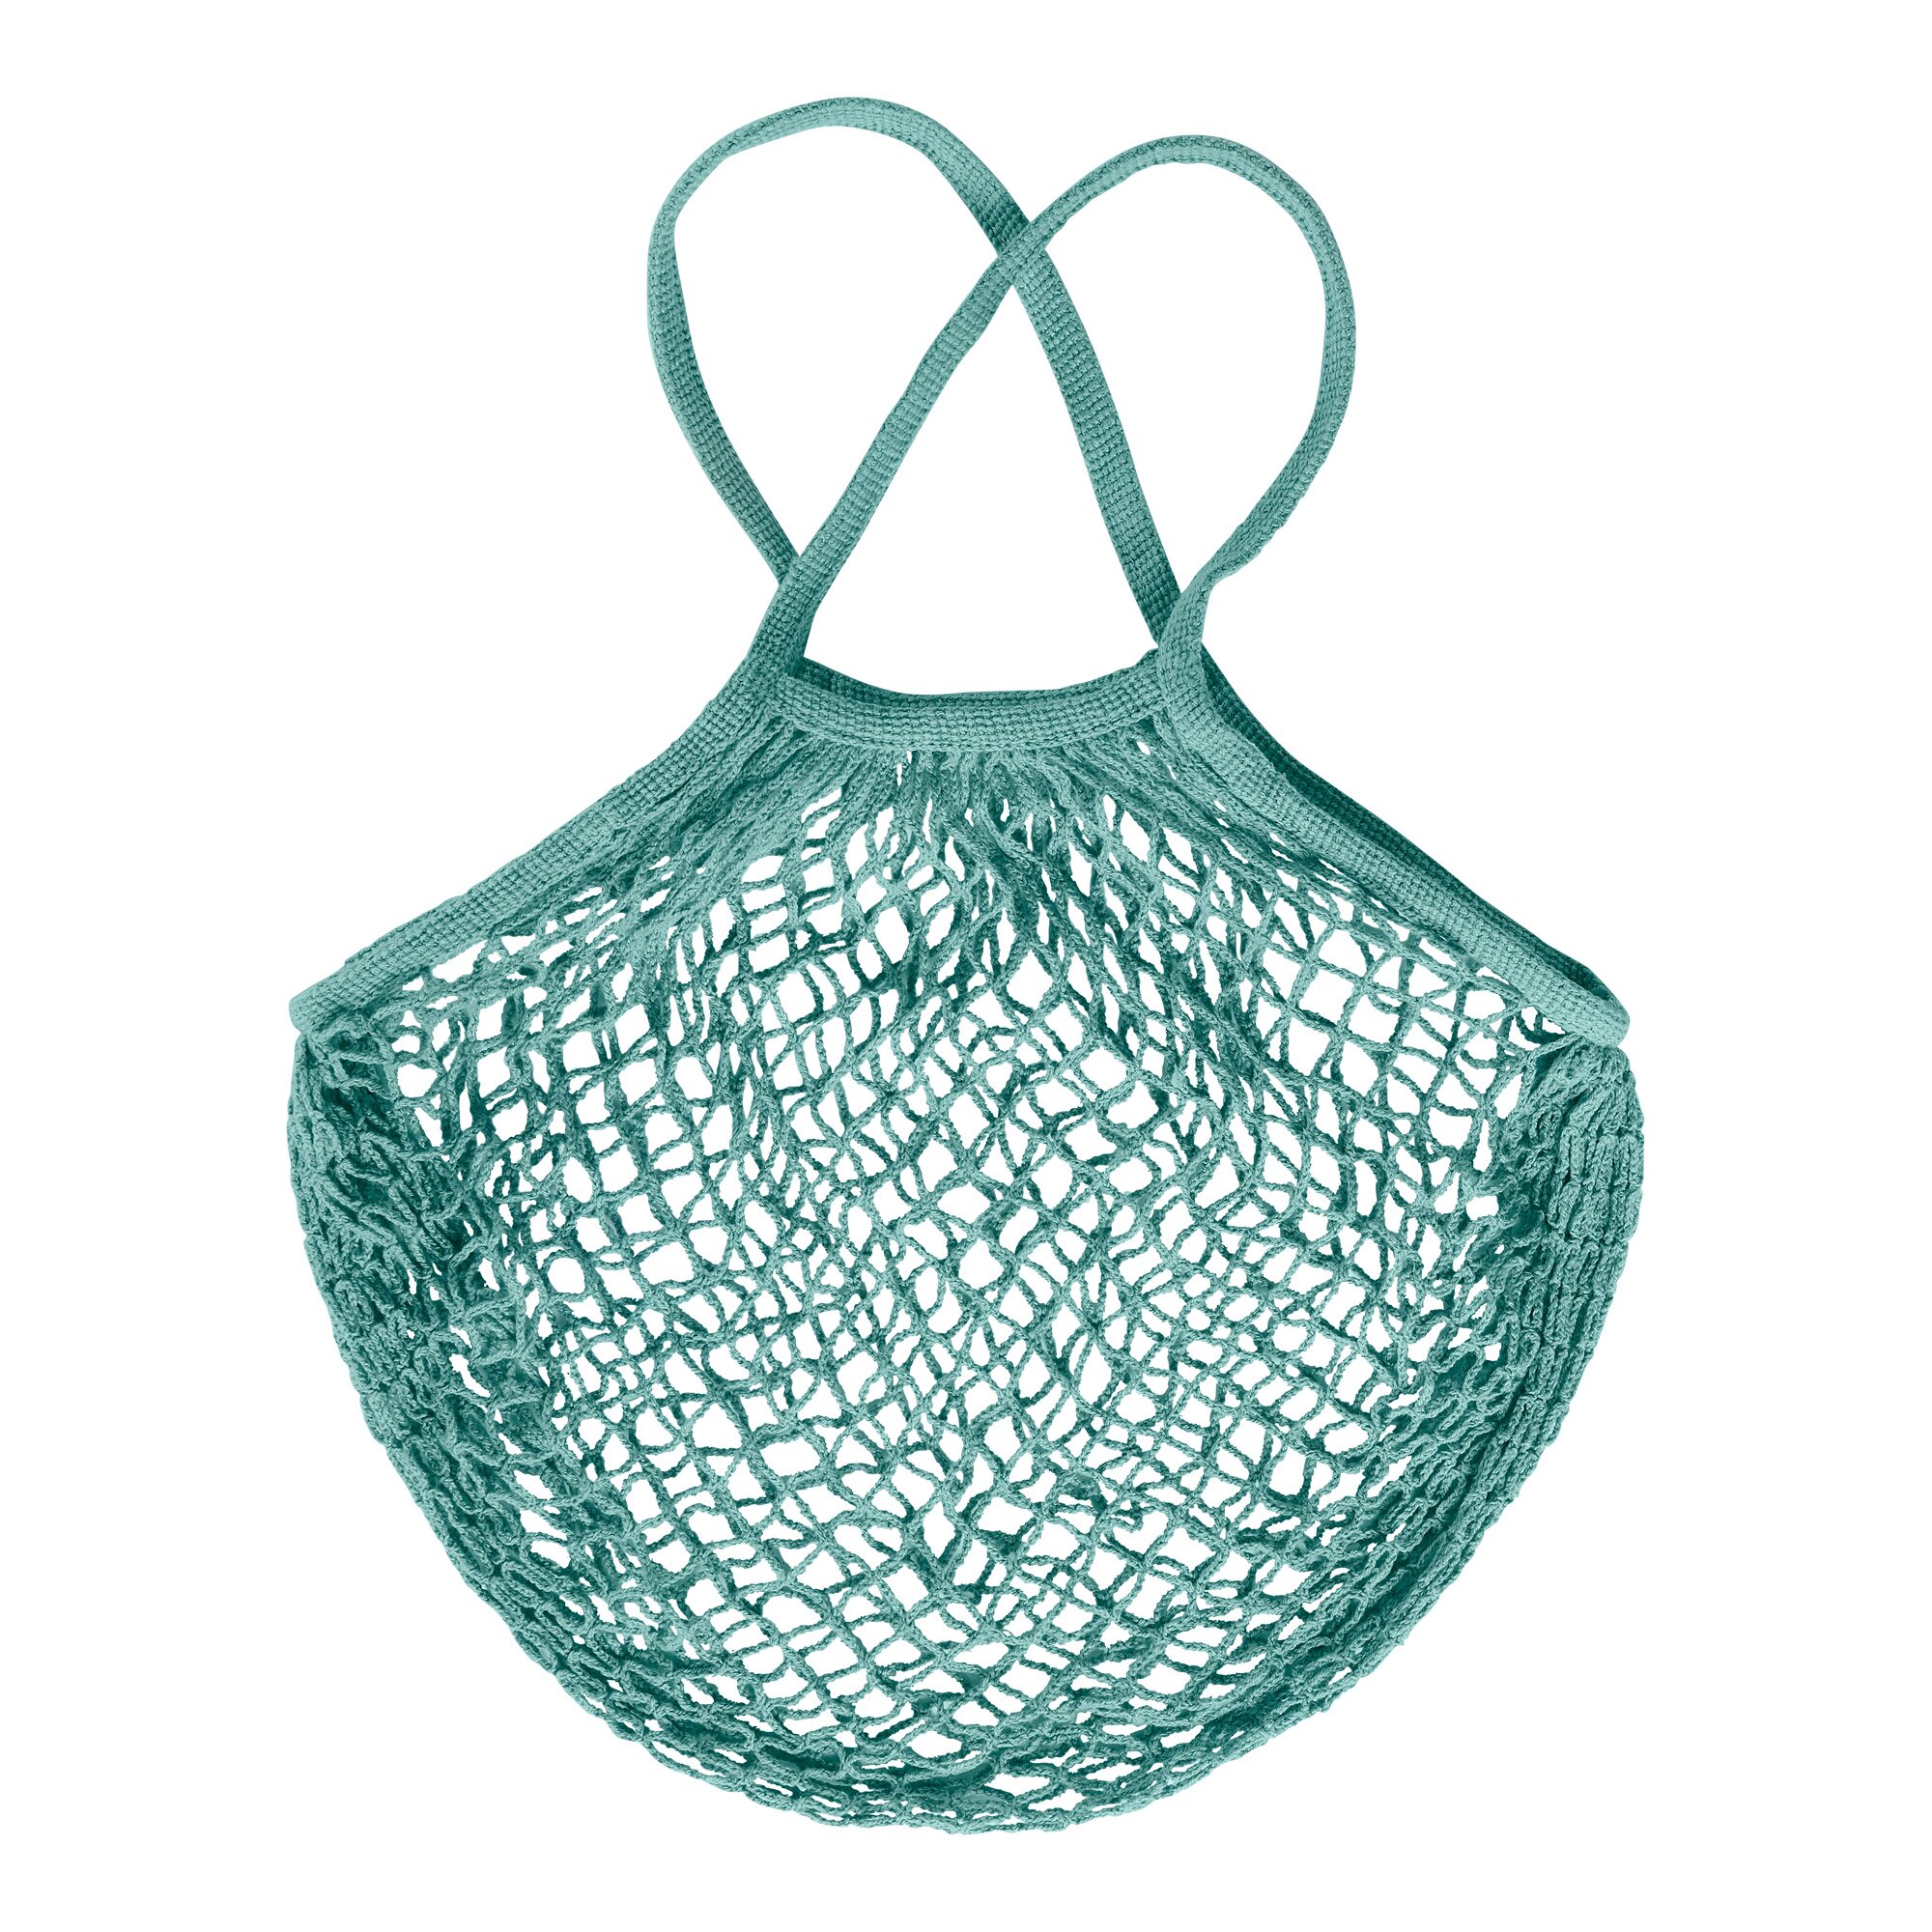 Einkaufsnetz-Tasche, grün